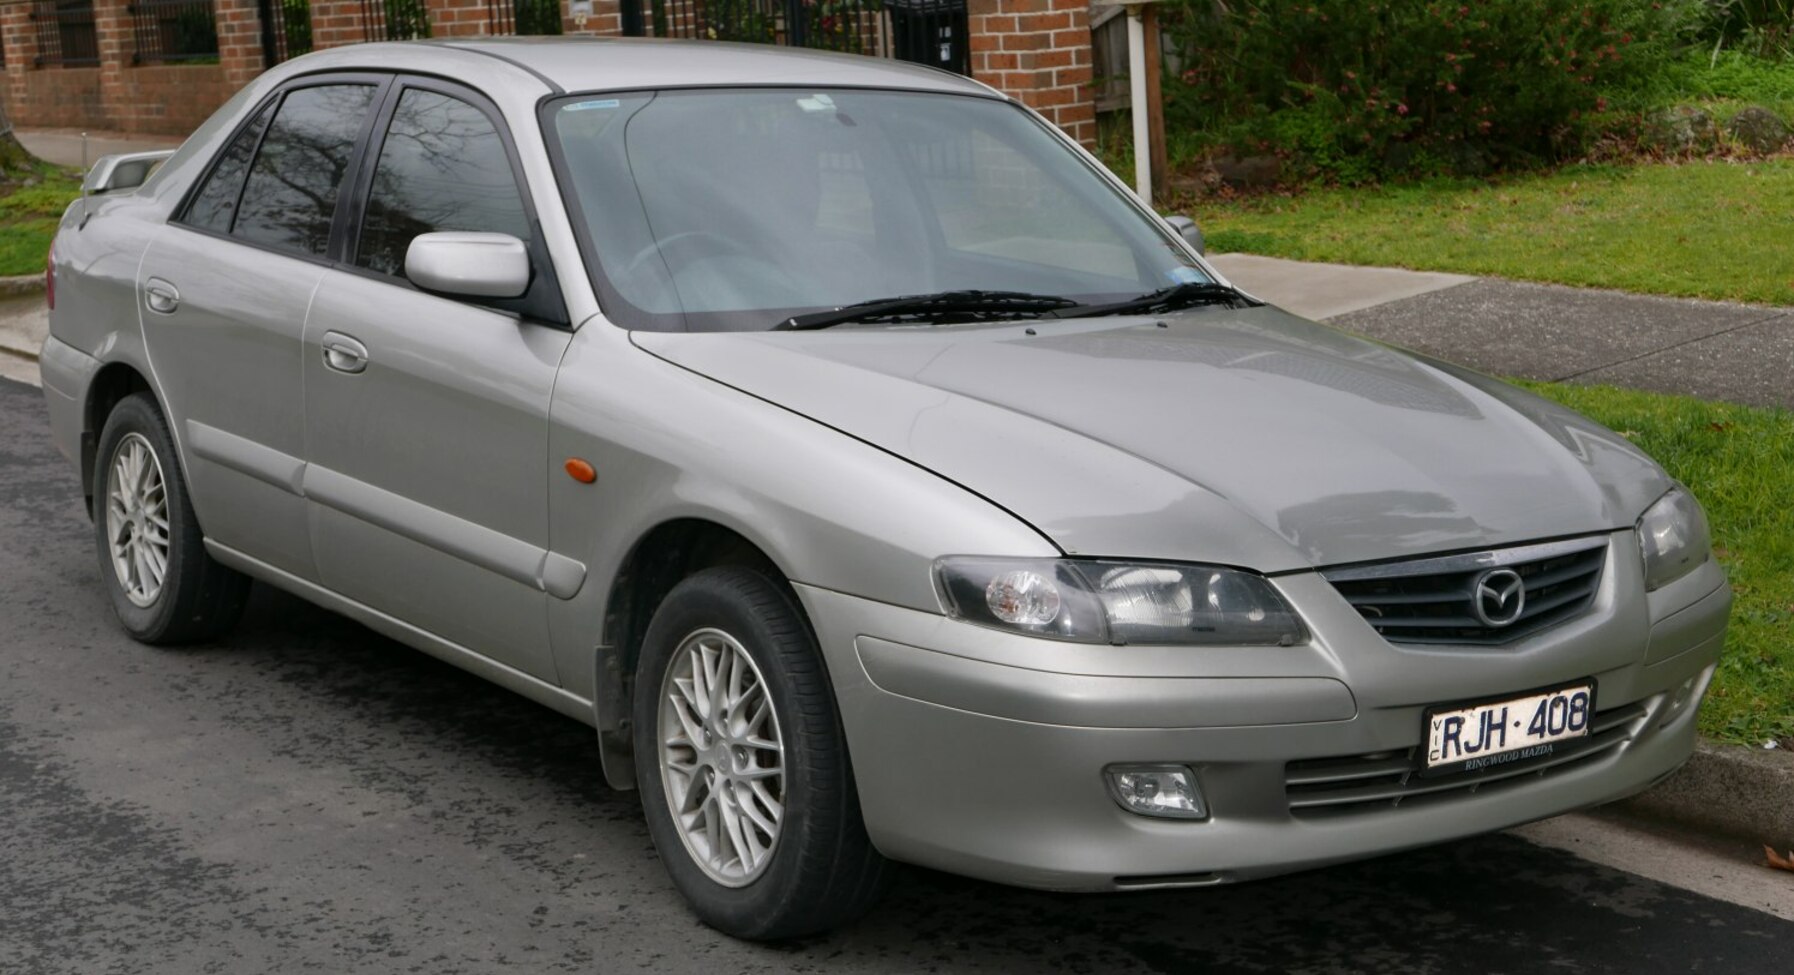 Đèn xi nhan trái Mazda 626 20012004 chất lượng tốt giá rẻ nhất